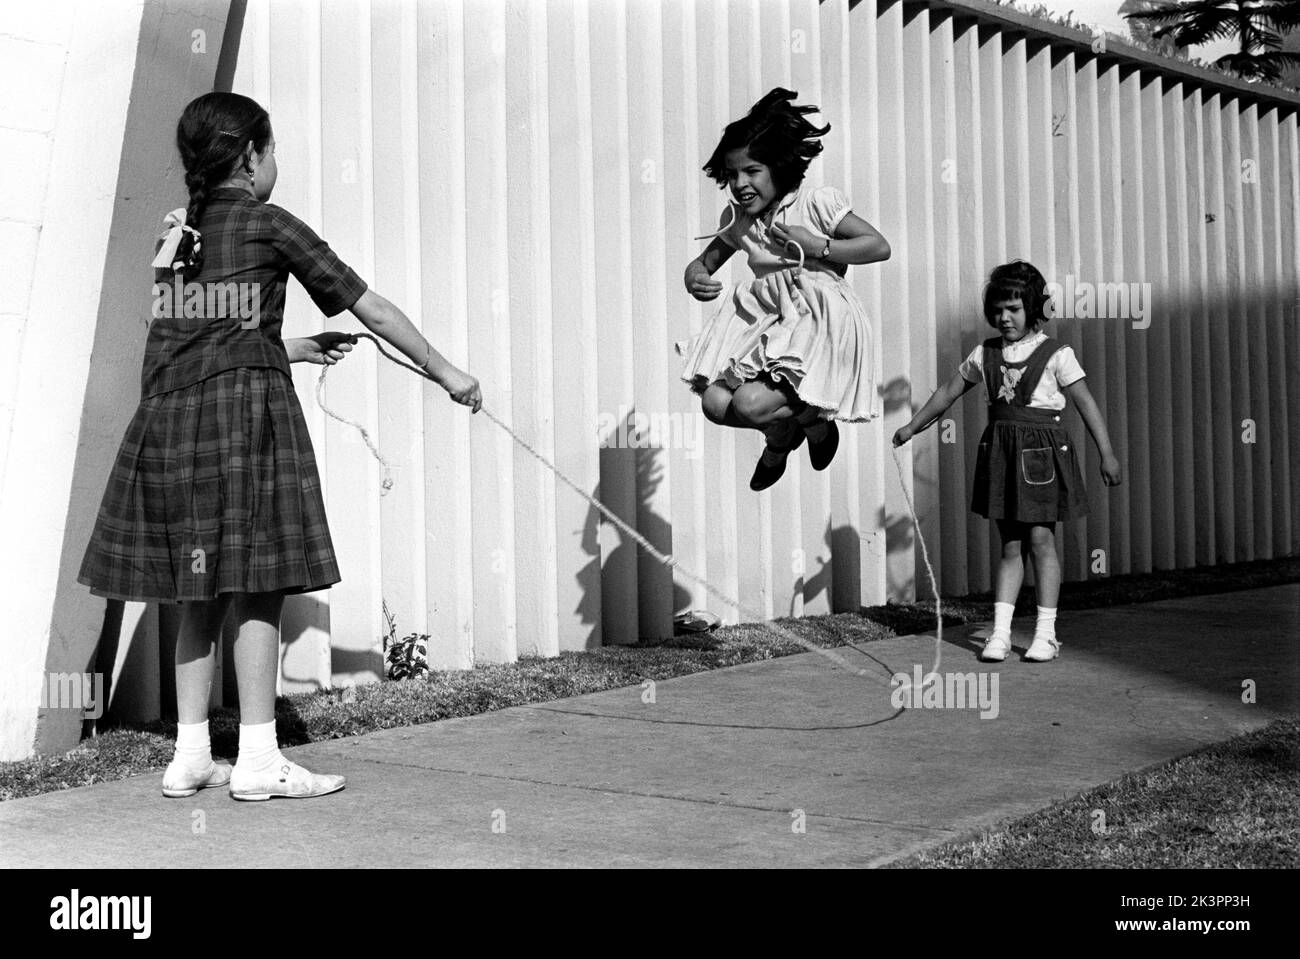 Mexiko im Jahr 1960s. Drei Mädchen spielen auf der Straße, mit einem Springseil - einem Springseil. Ein Mädchen an jedem Ende des Seils schwingt es und ein Mädchen in der Mitte springt darüber. Mexiko 1964. Roland Palm Ref.-Ordner 2. Stockfoto